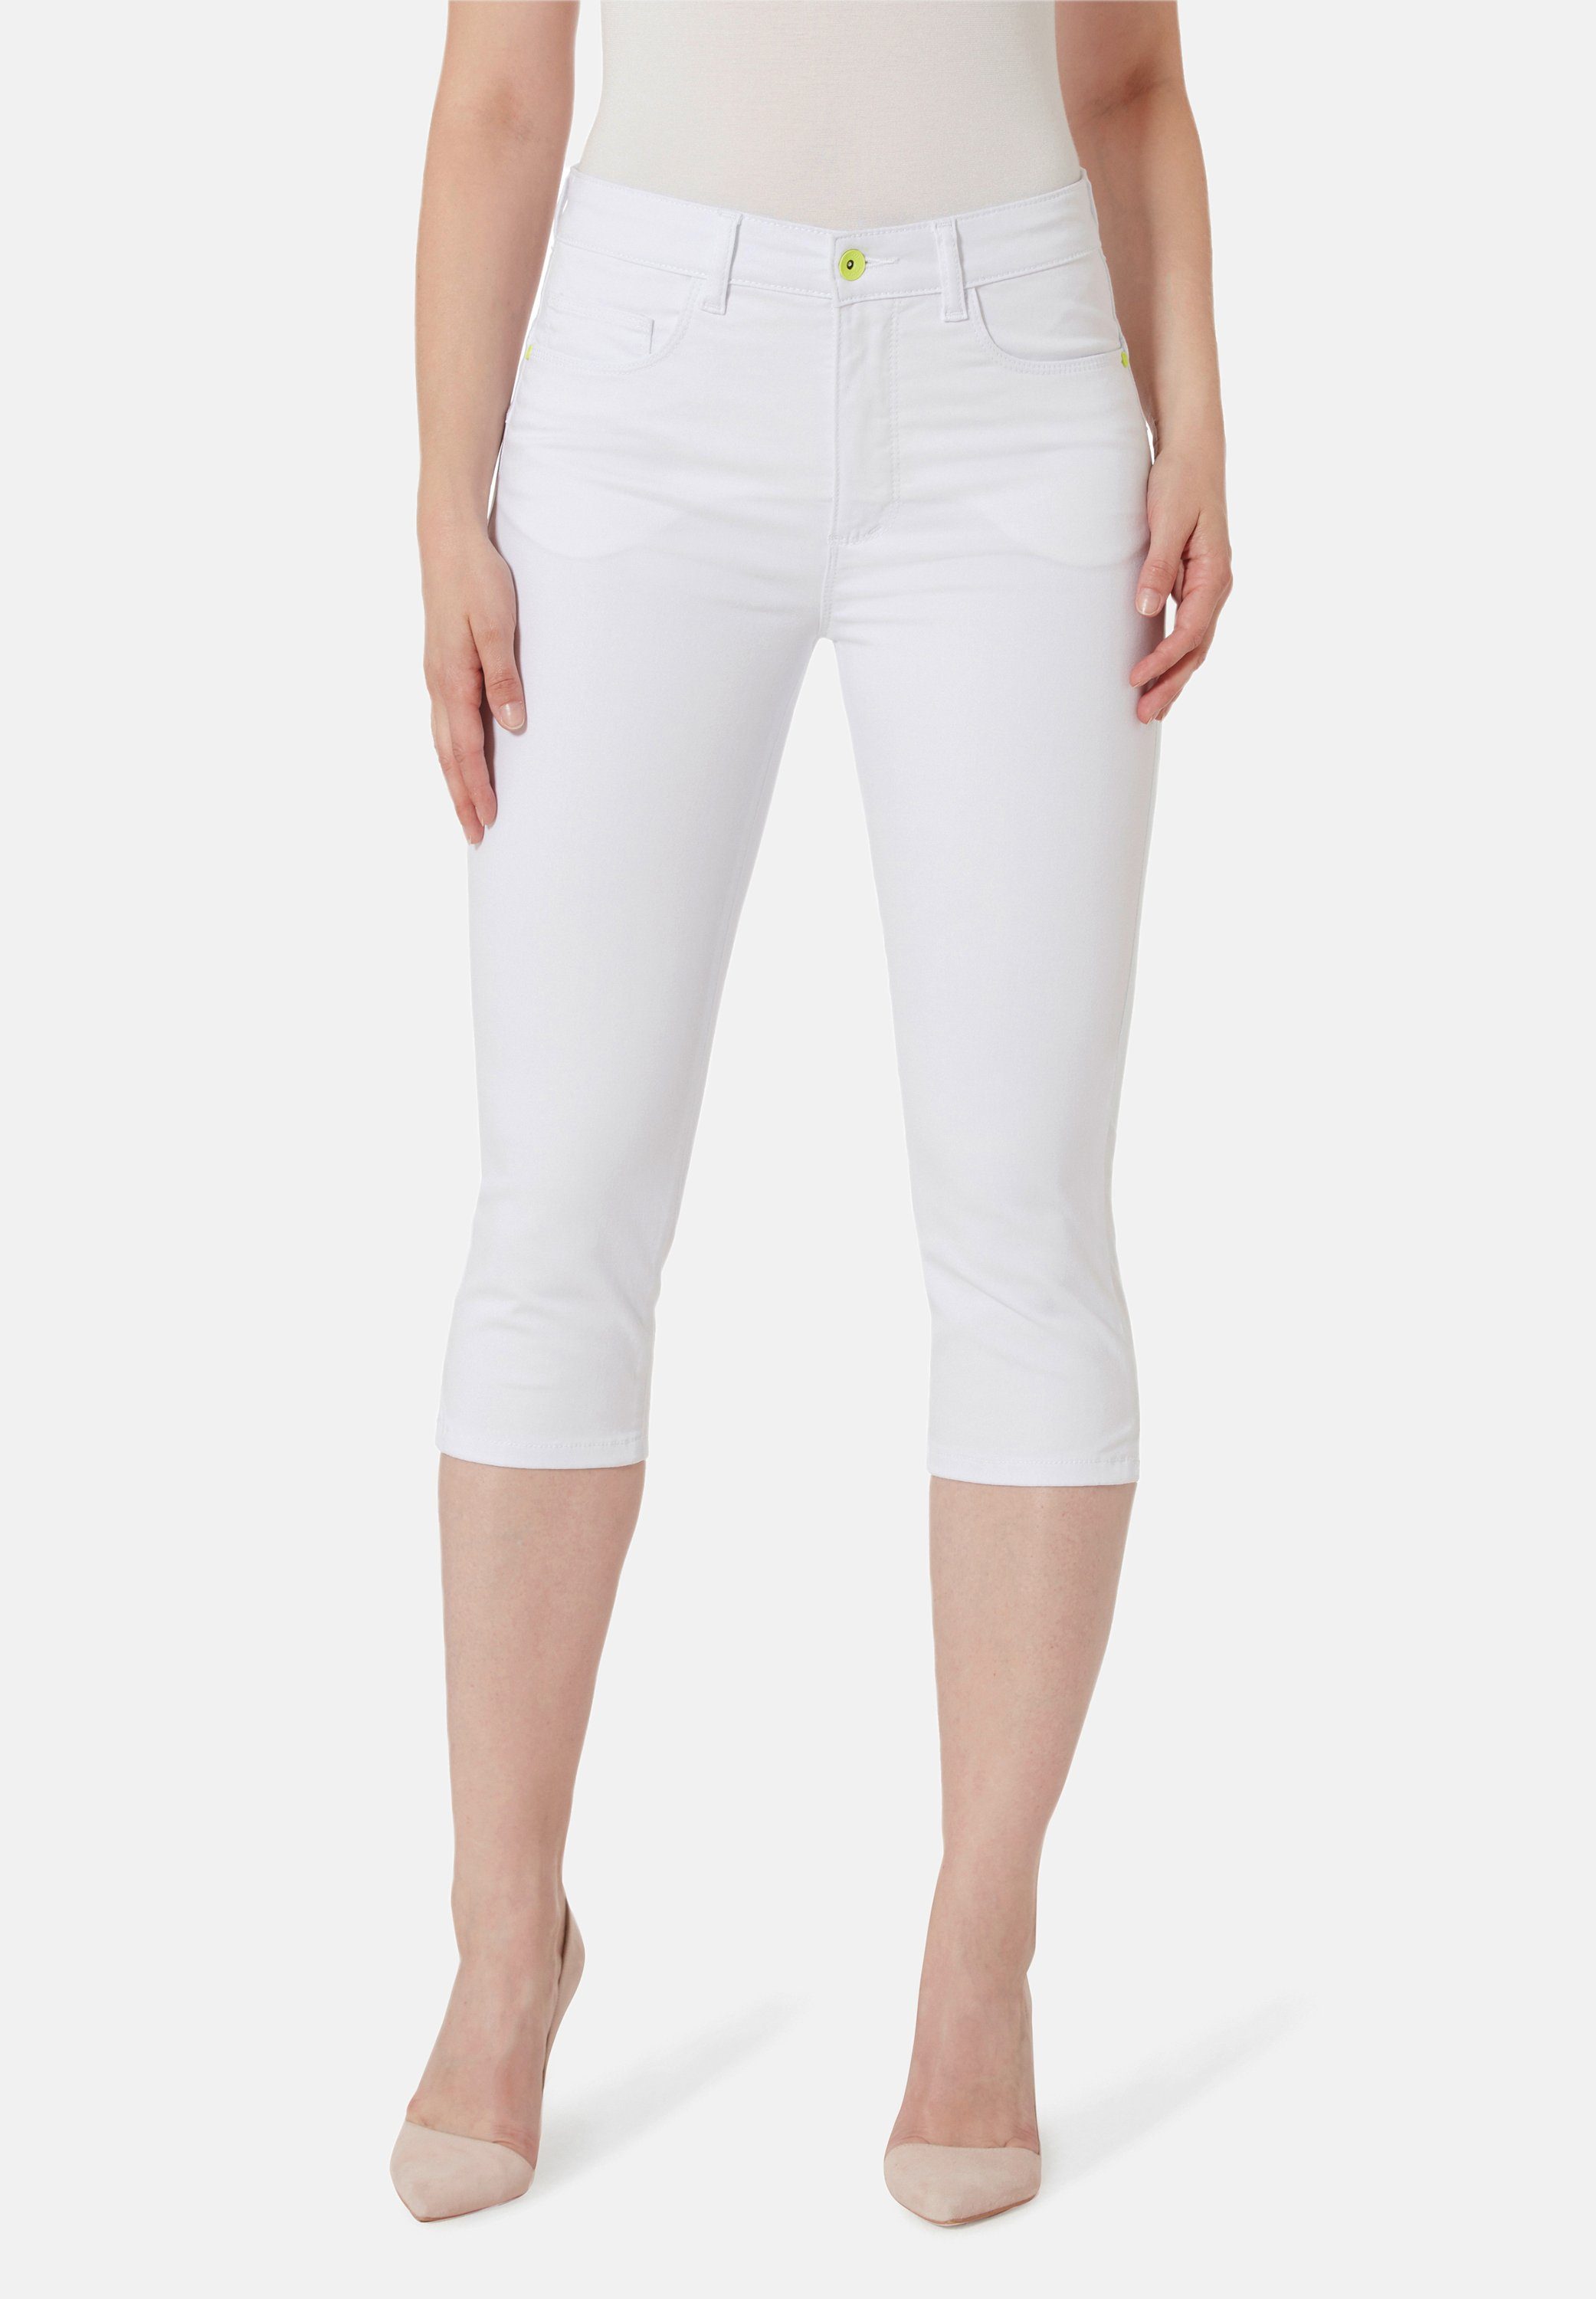 STOOKER WOMEN 7/8-Jeans Capri Denim Skinny Fit white